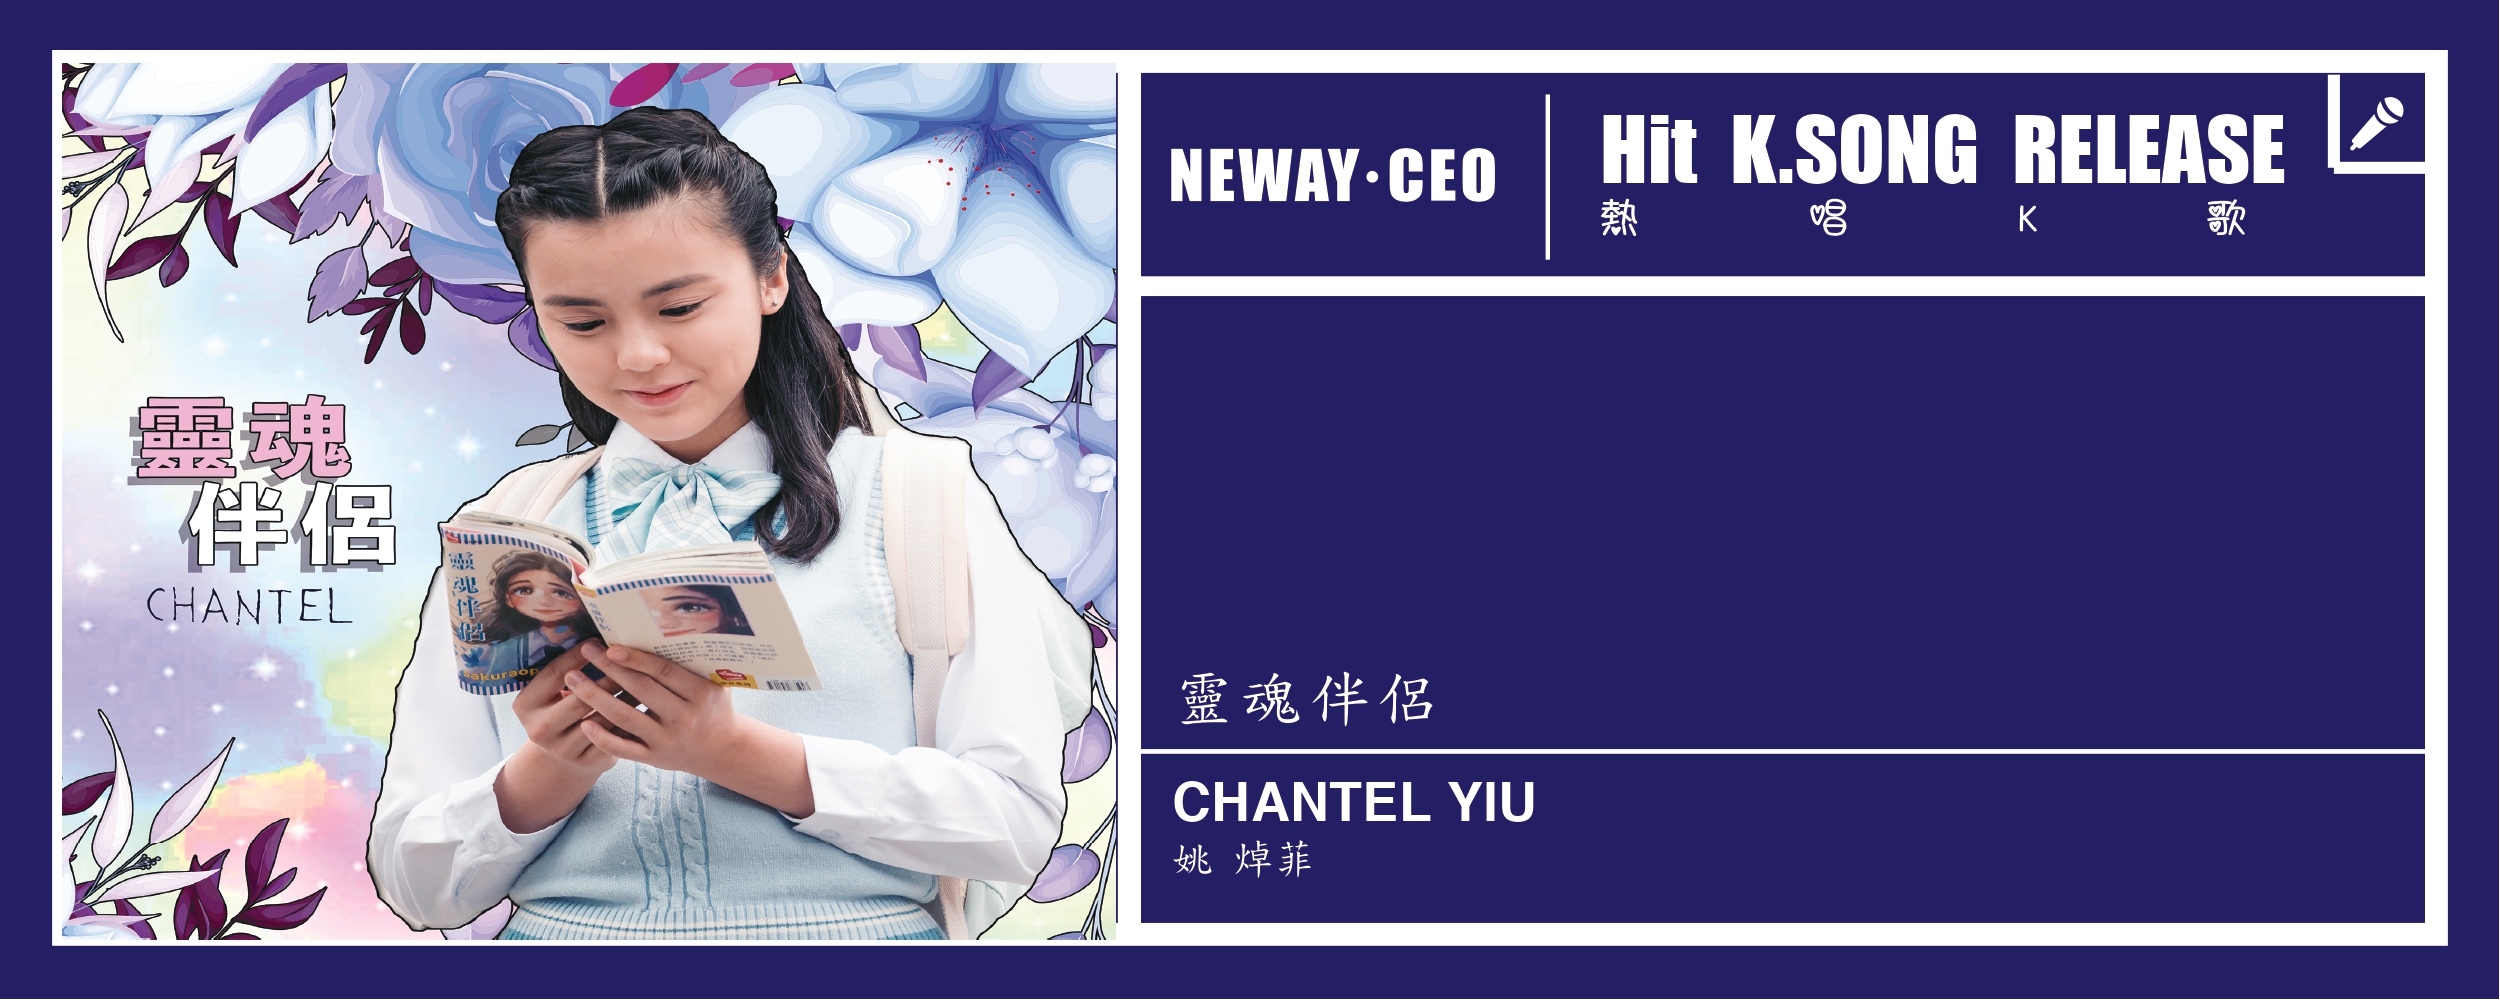 Neway New Release - Chantel Yiu